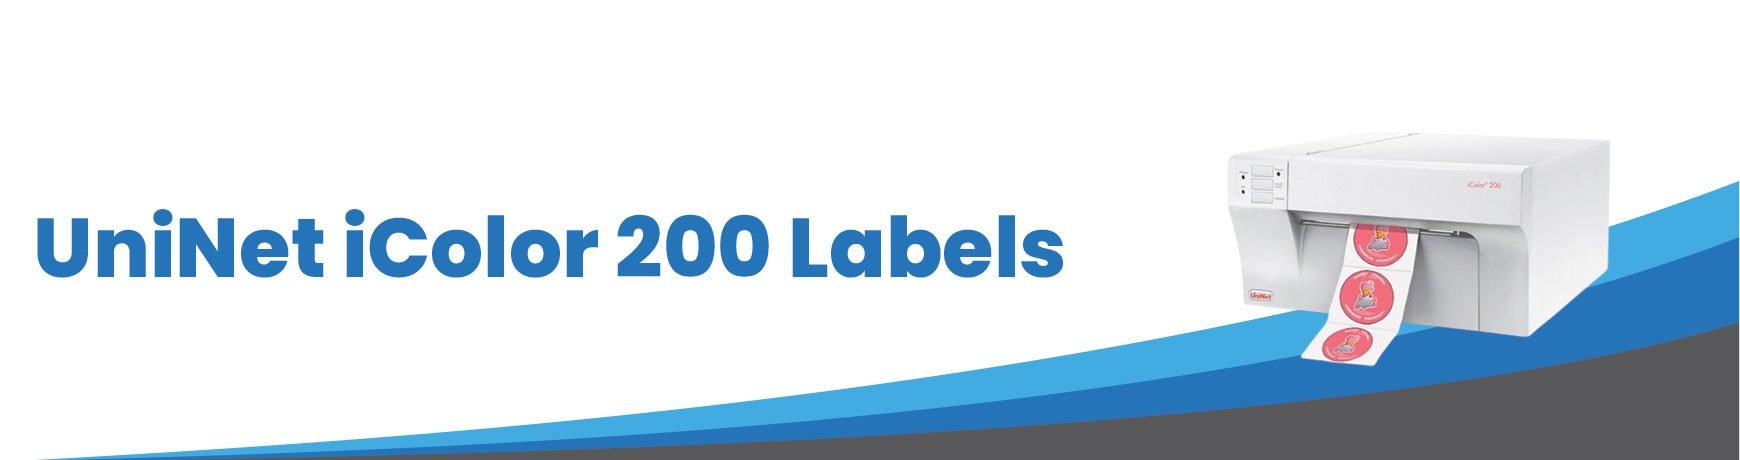 UniNet iColor 200 Labels